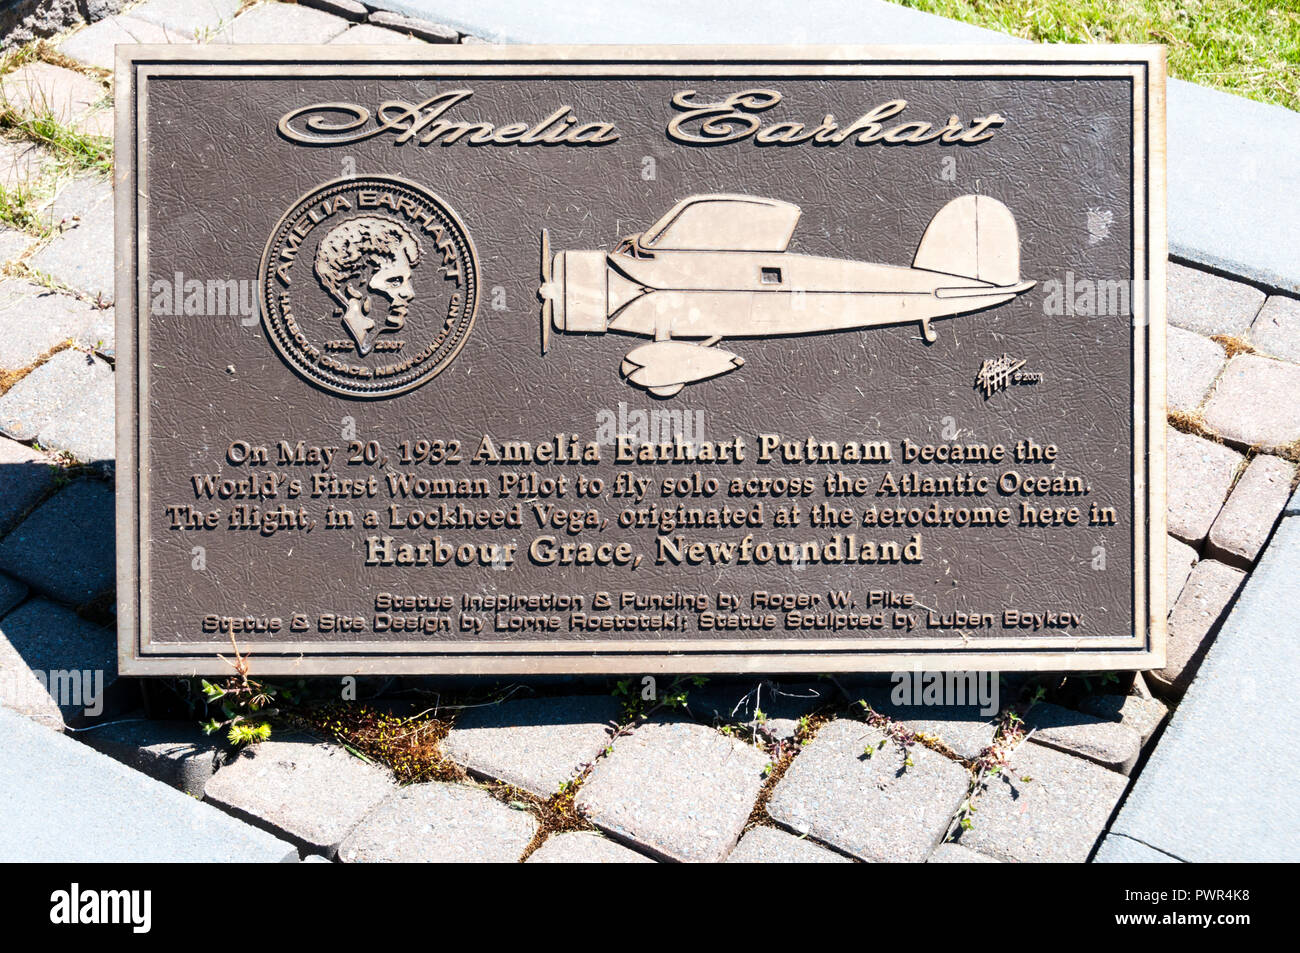 Plaque commémorant la première femme vol solo à travers l'Atlantique par Amelia Earhart. À Harbour Grace (Terre-Neuve), le point de départ de son vol. Banque D'Images